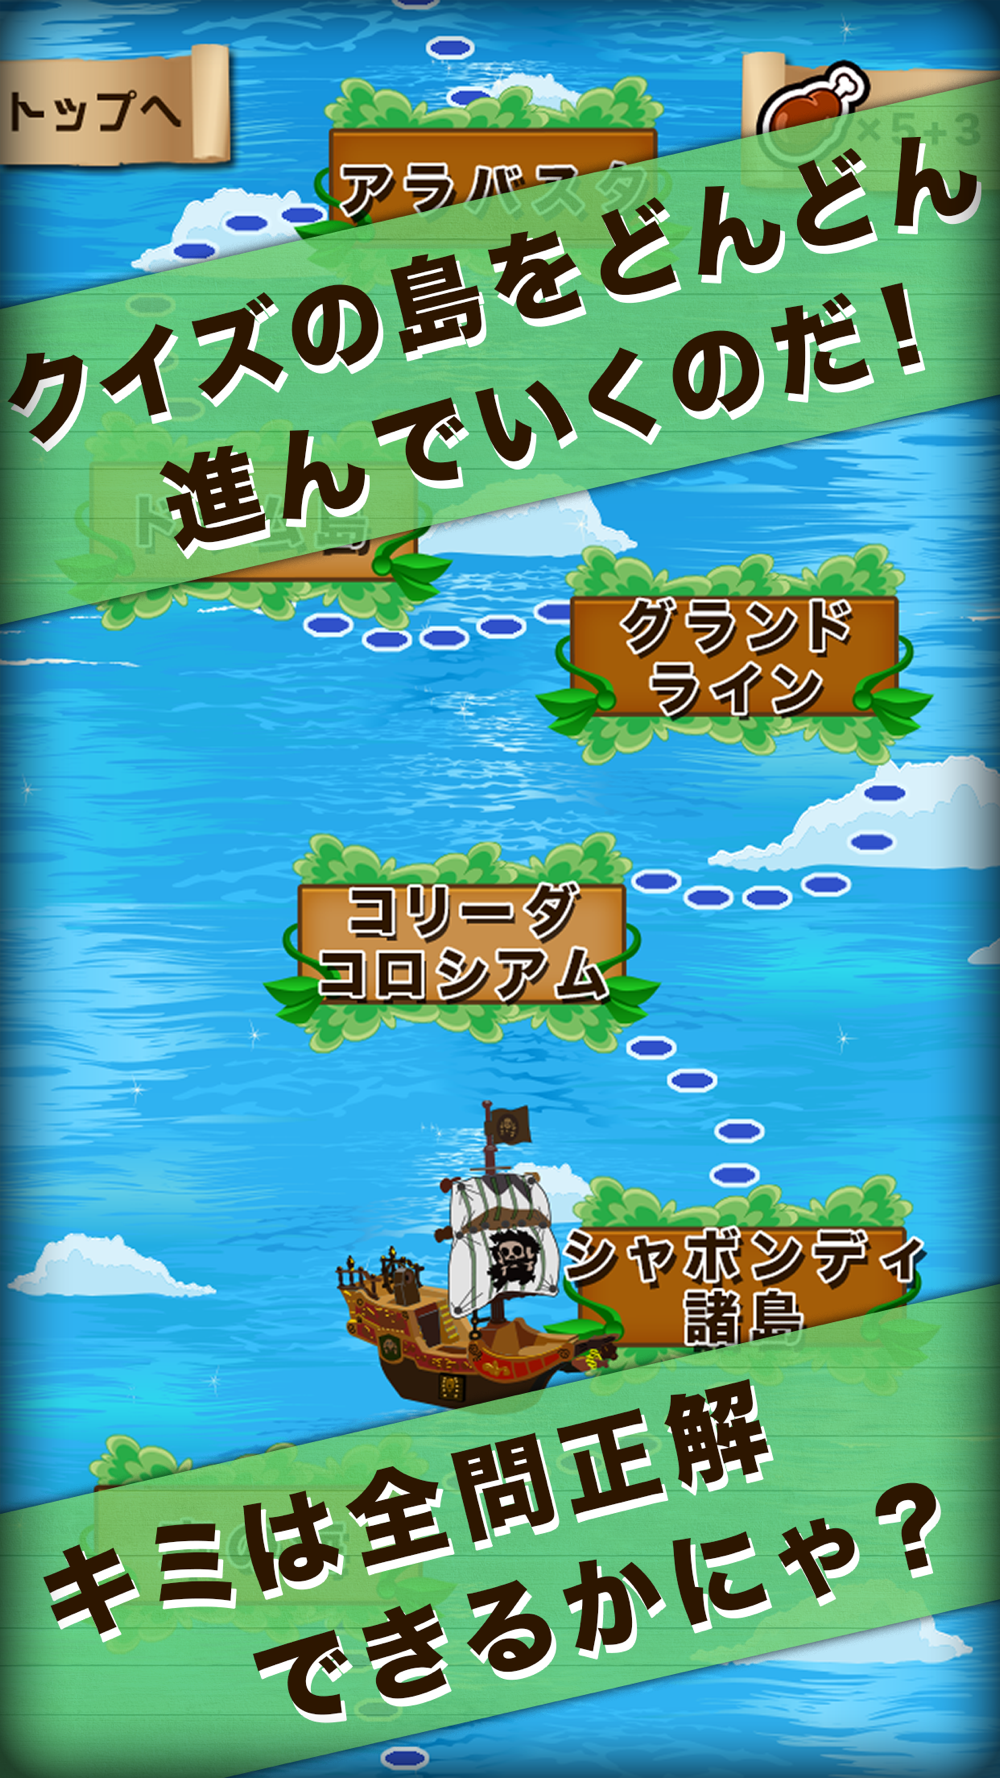 麦わらクイズ For ワンピース One Piece Free Download App For Iphone Steprimo Com